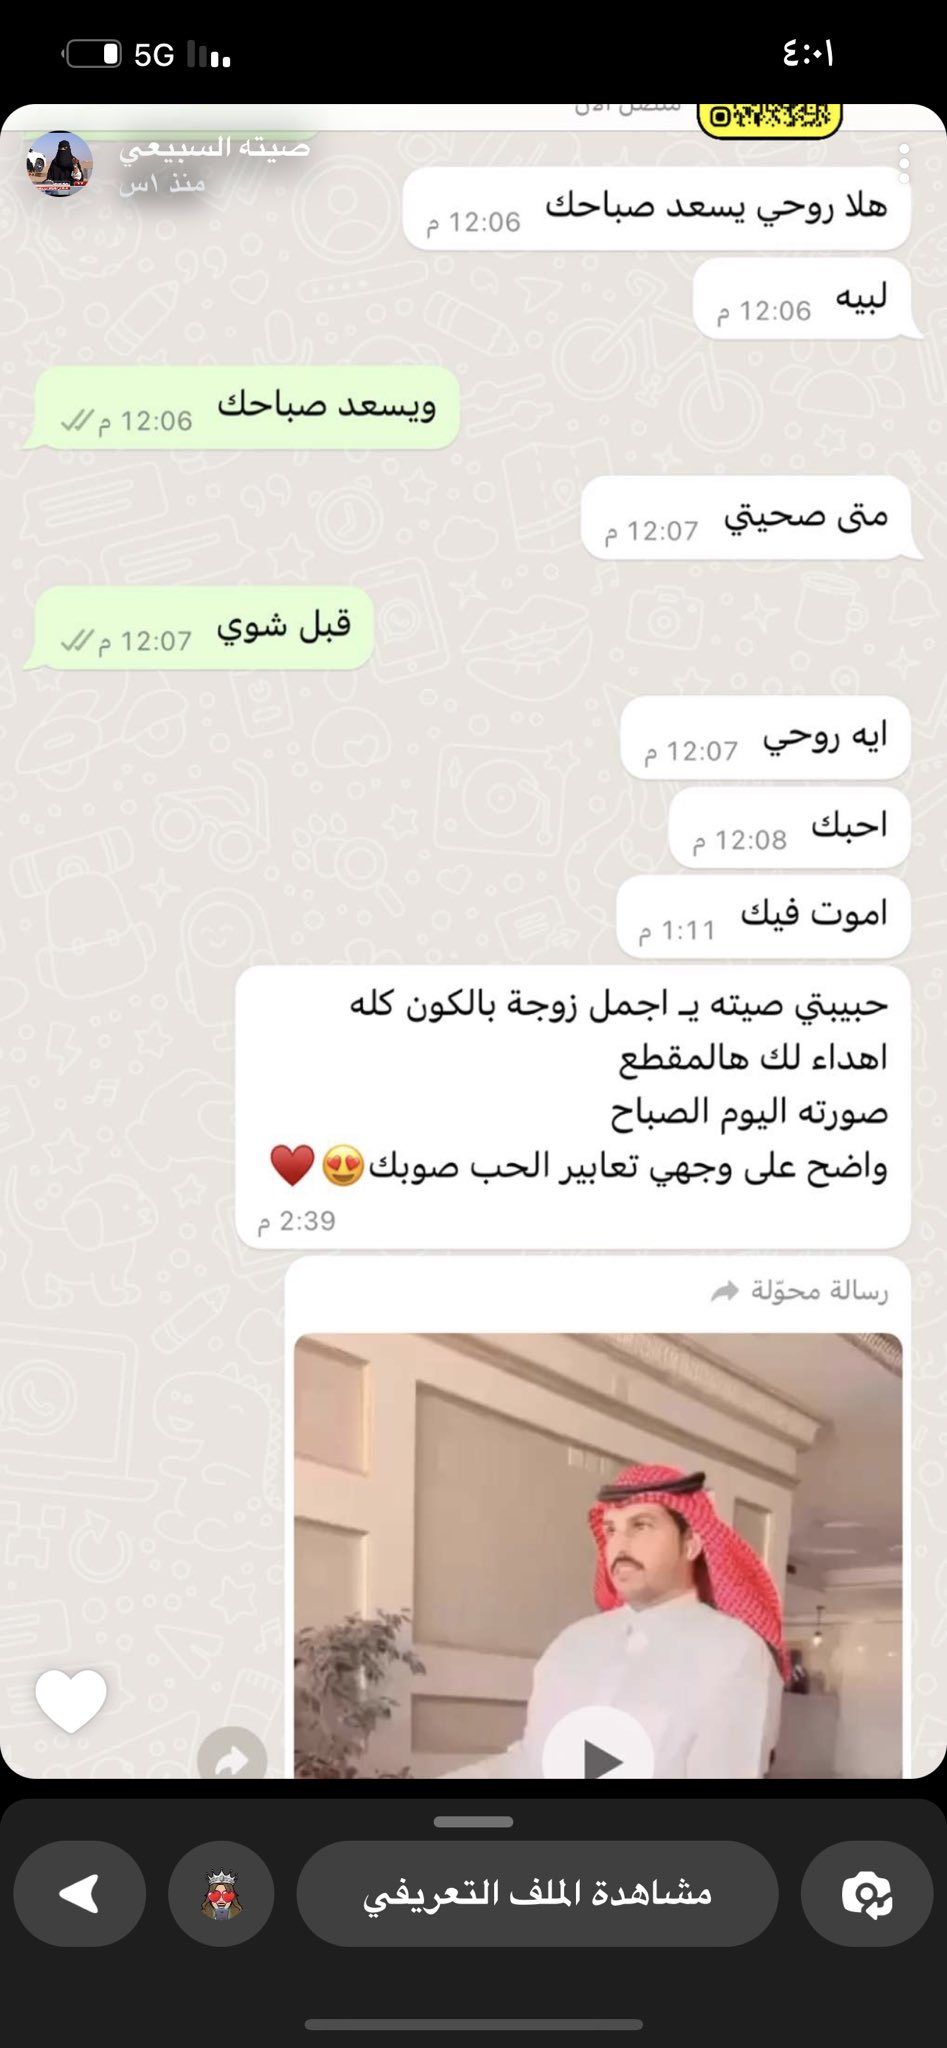 صيته تشارك محادثة بينها وبين زوجها محمد الشغار عبر تطبيق الواتس آب